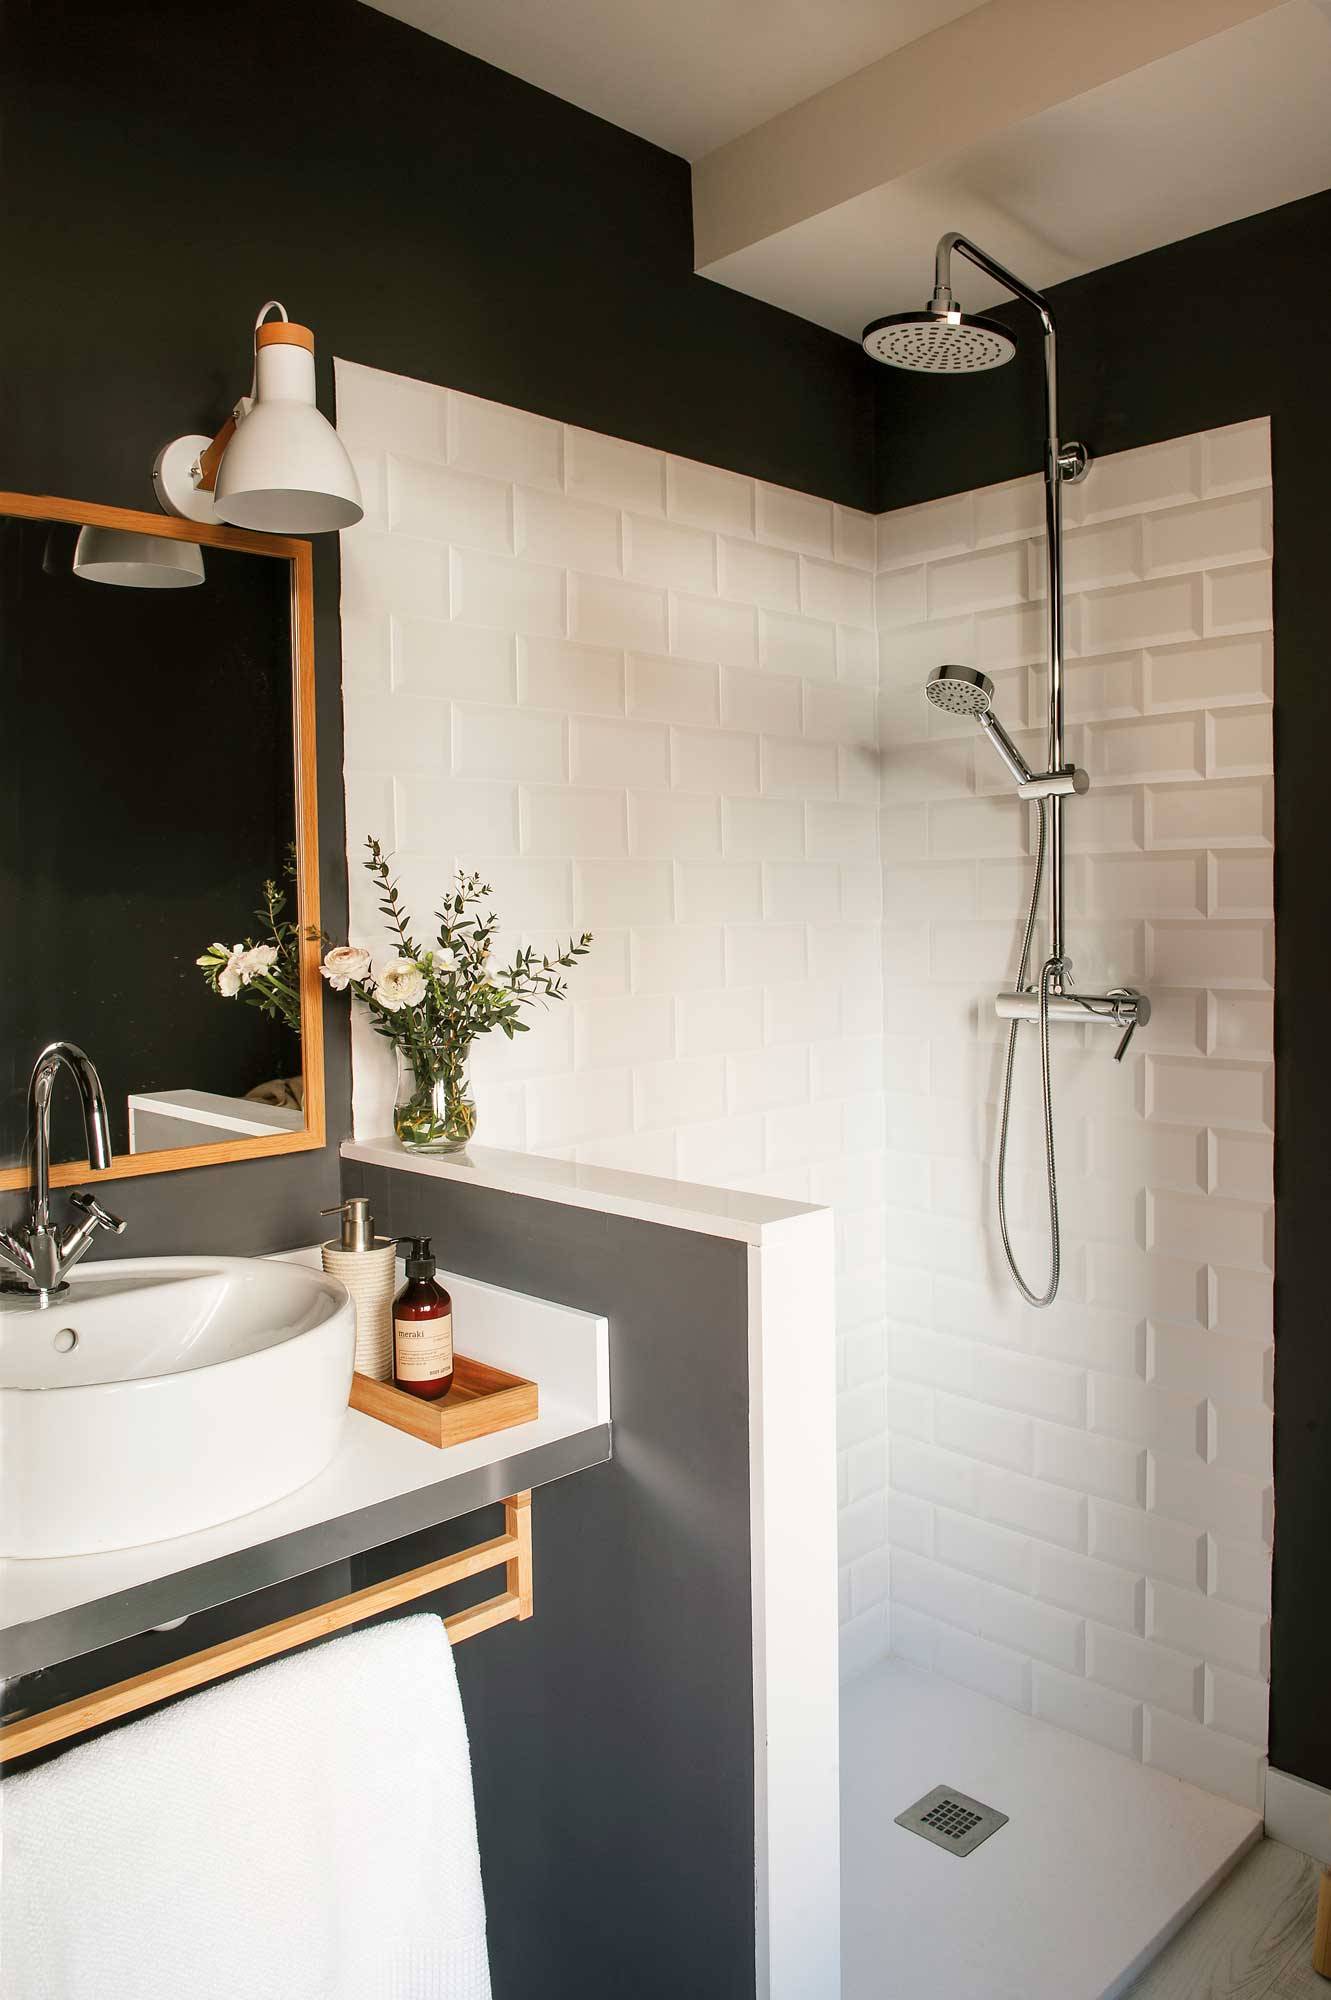 Baño con paredes negras y azulejos blanco tipo metro con un murete que separa la ducha del lavabamanos.  